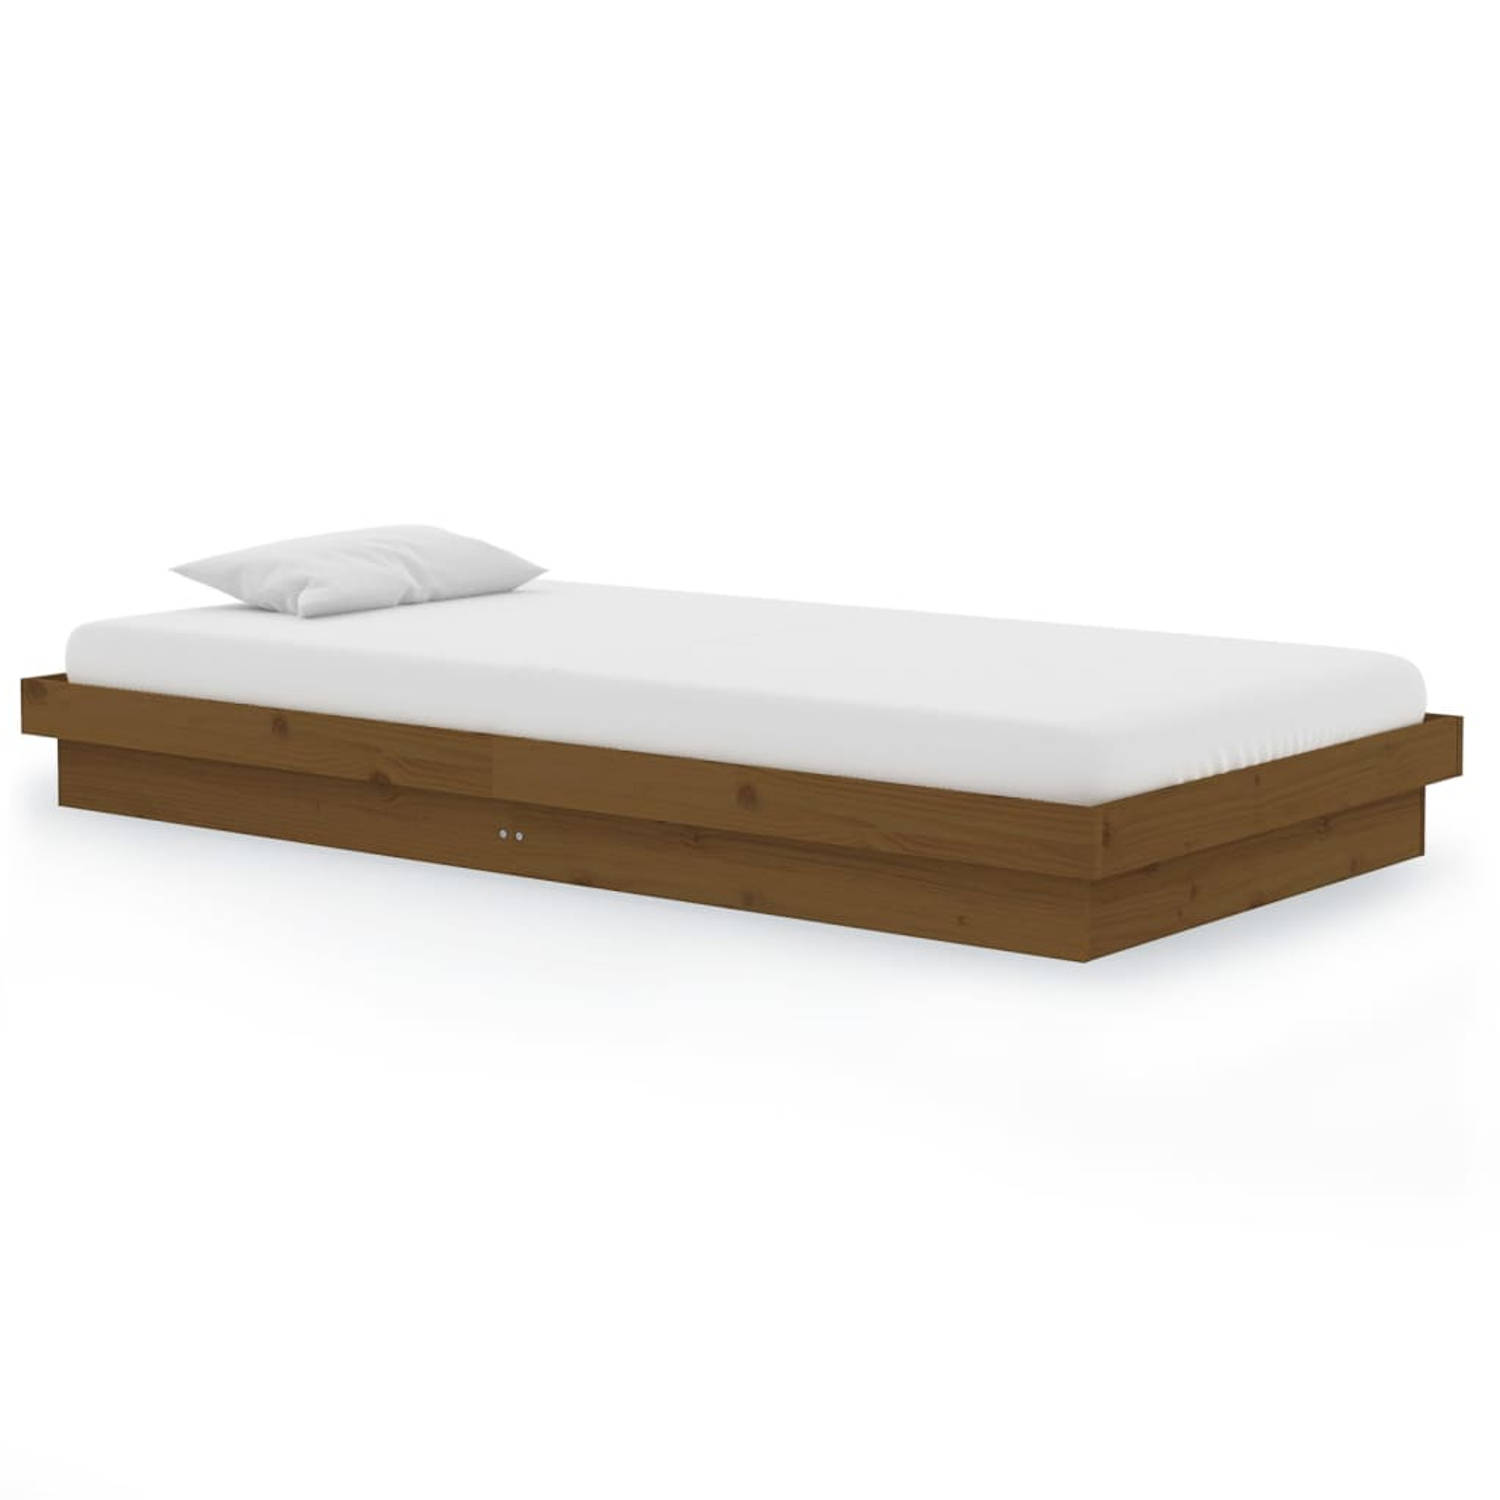 The Living Store Bedframe massief hout honingbruin 100x200 cm - Bedframe - Bedframes - Eenpersoonsbed - Bed - Bedombouw - Ledikant - Houten Bedframe - Eenpersoonsbedden - Bedden -